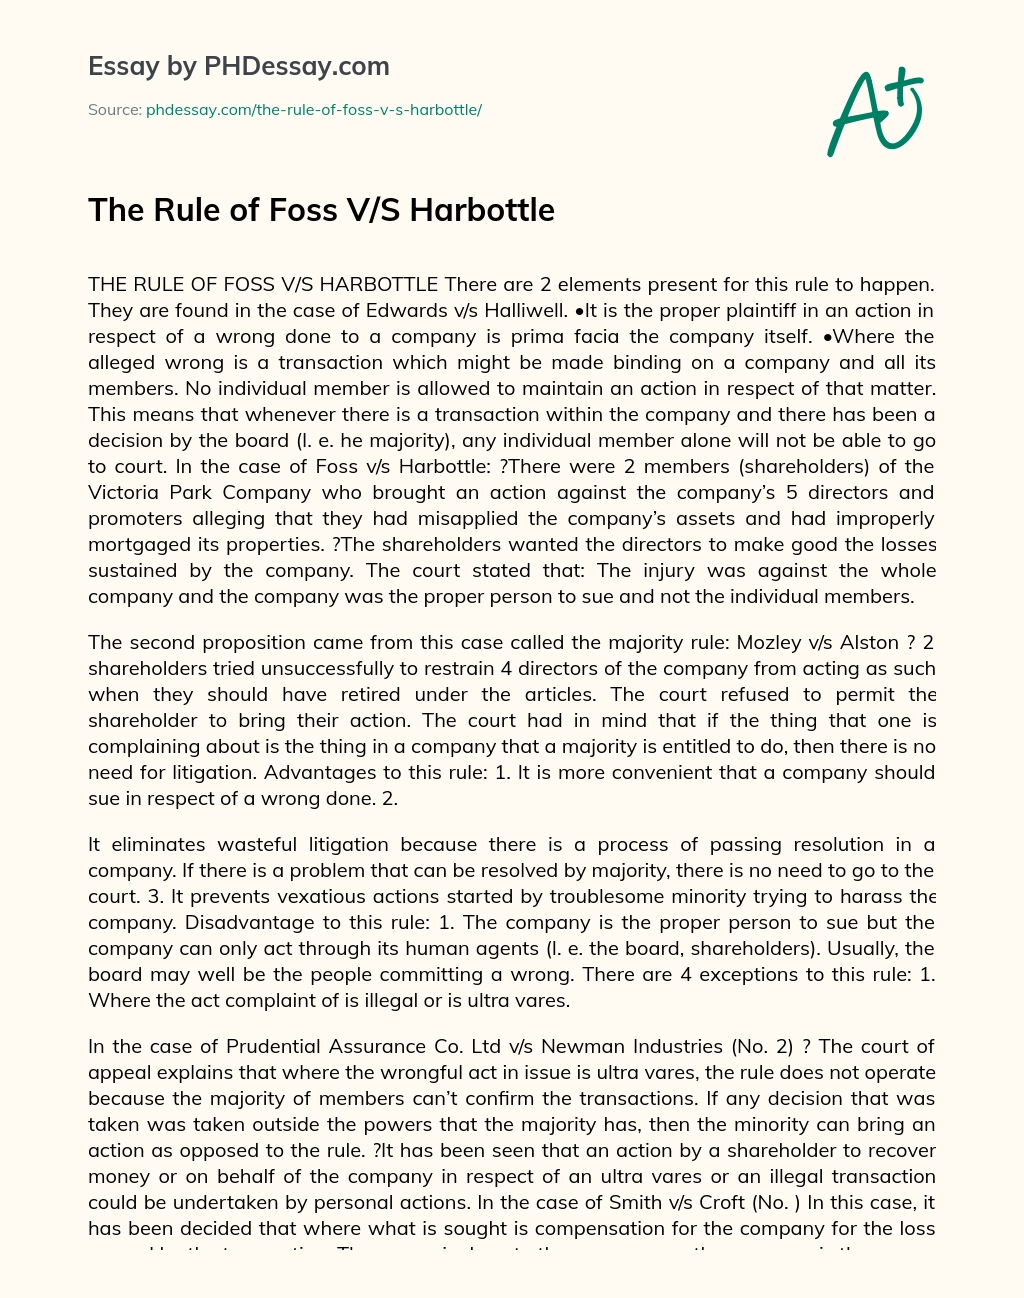 The Rule of Foss V/S Harbottle essay